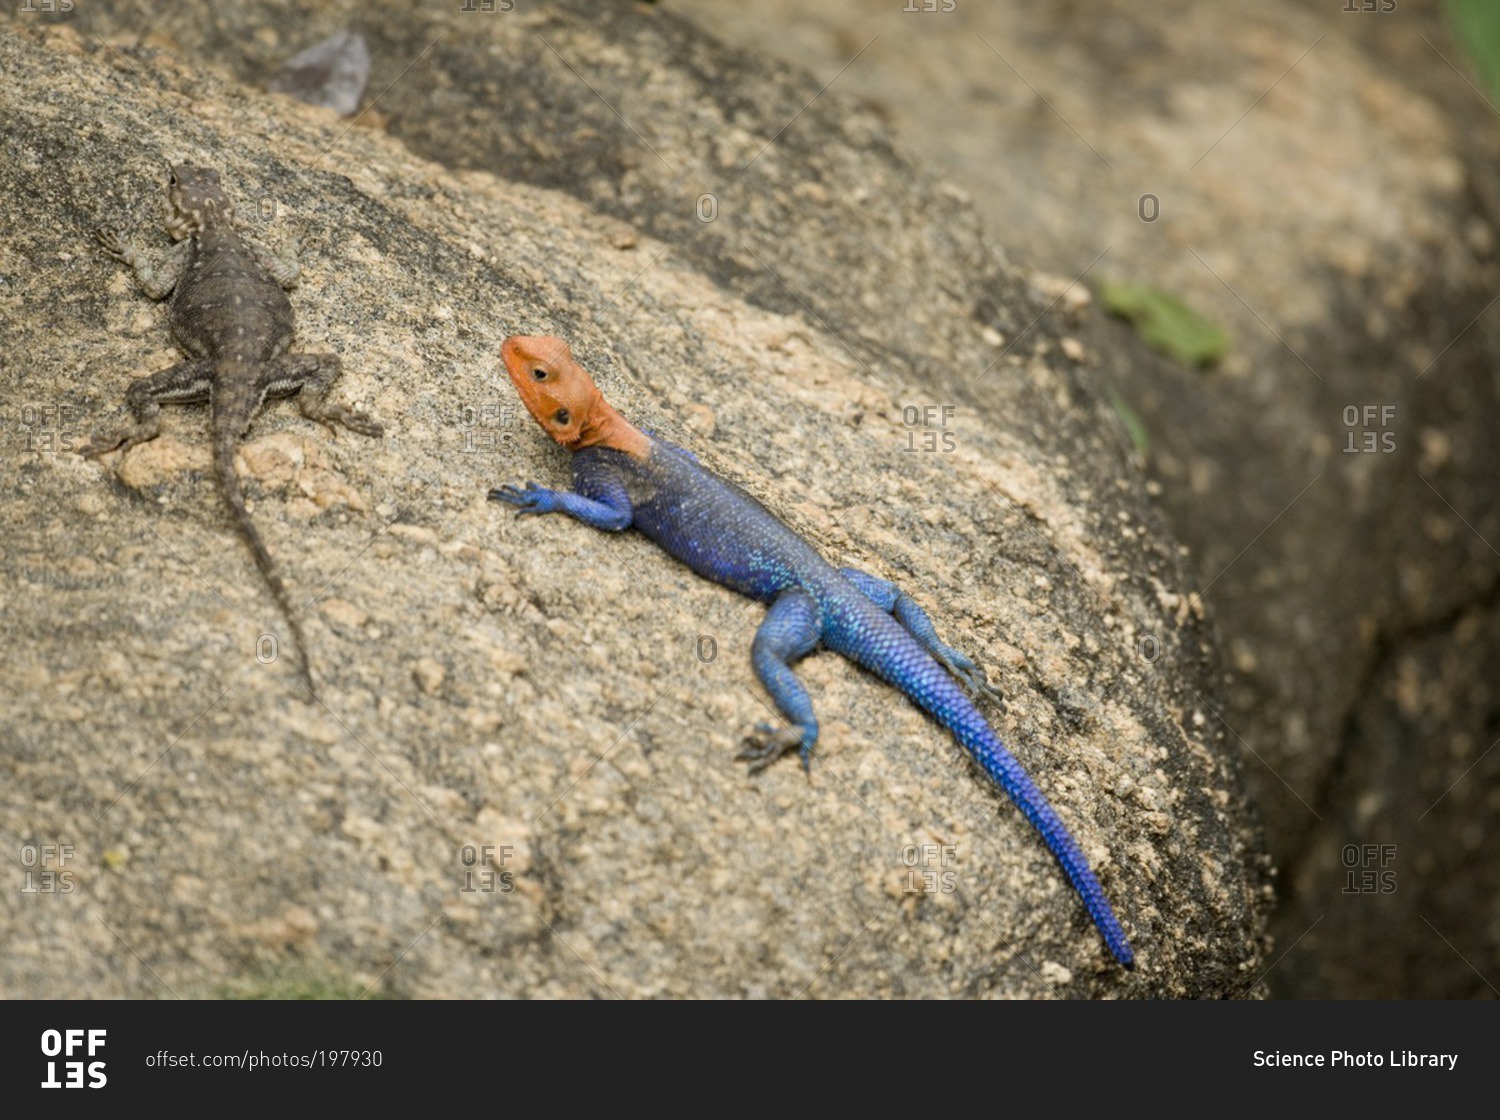 Lizards on a rock in Tanzania